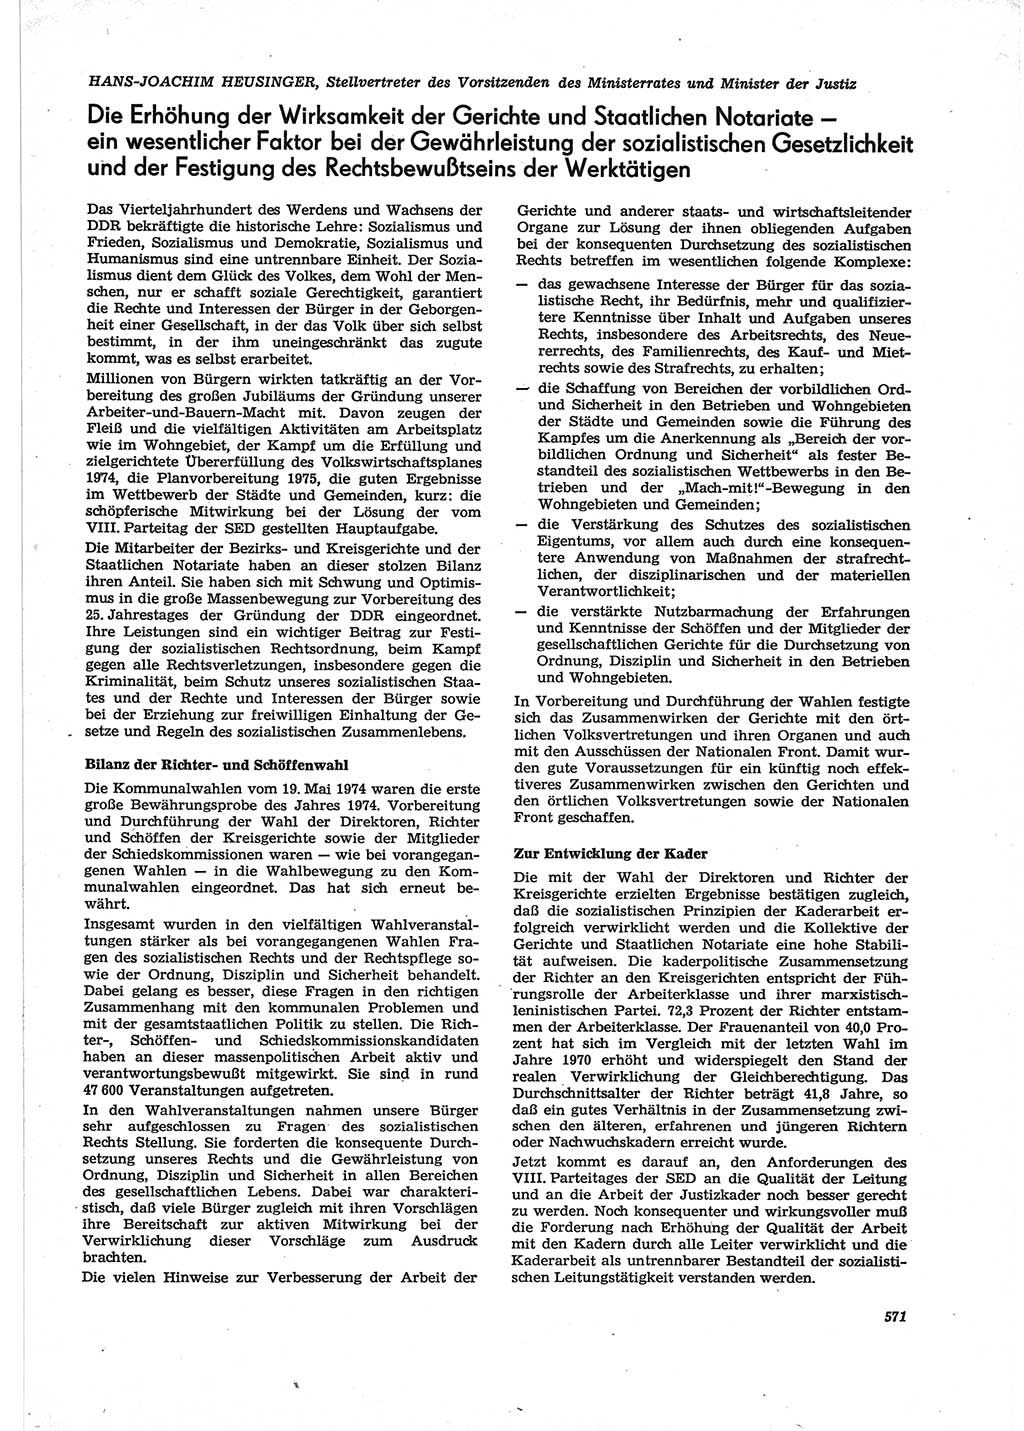 Neue Justiz (NJ), Zeitschrift für Recht und Rechtswissenschaft [Deutsche Demokratische Republik (DDR)], 28. Jahrgang 1974, Seite 571 (NJ DDR 1974, S. 571)